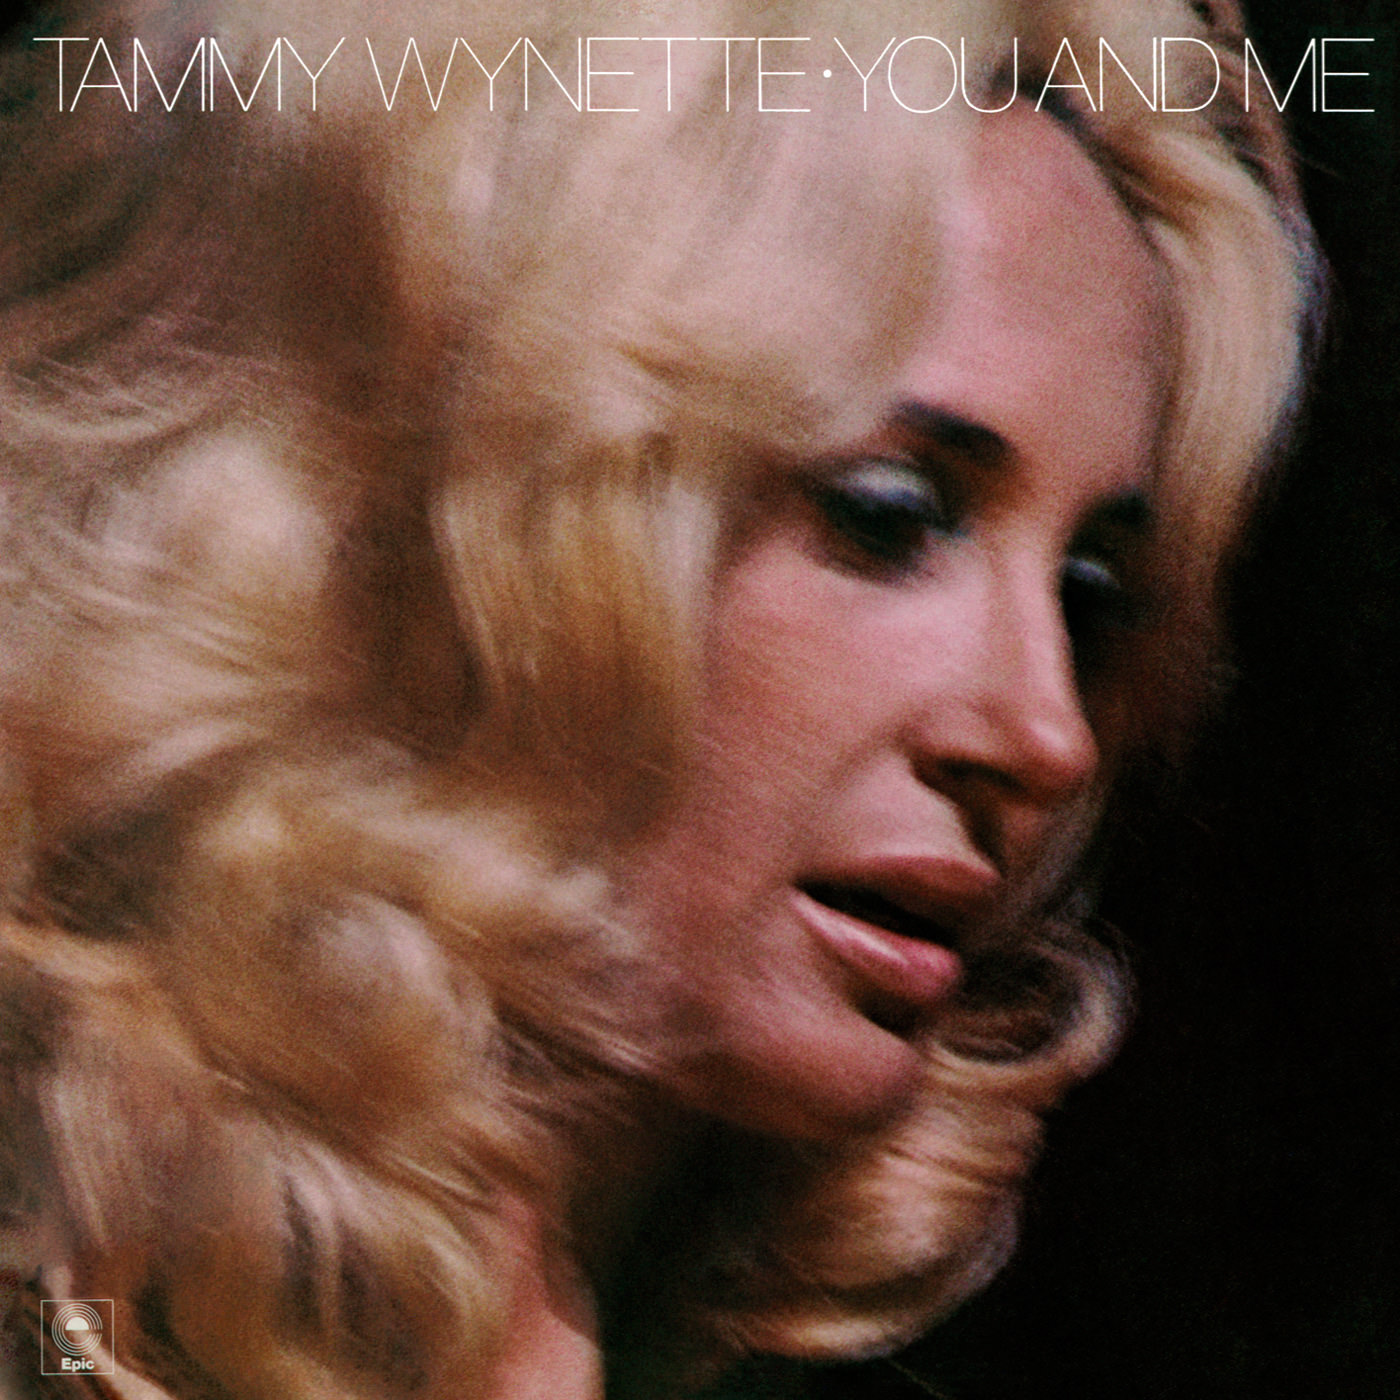 Tammy Wynette - You And Me (1976/2013) [Qobuz FLAC 24bit/96kHz]